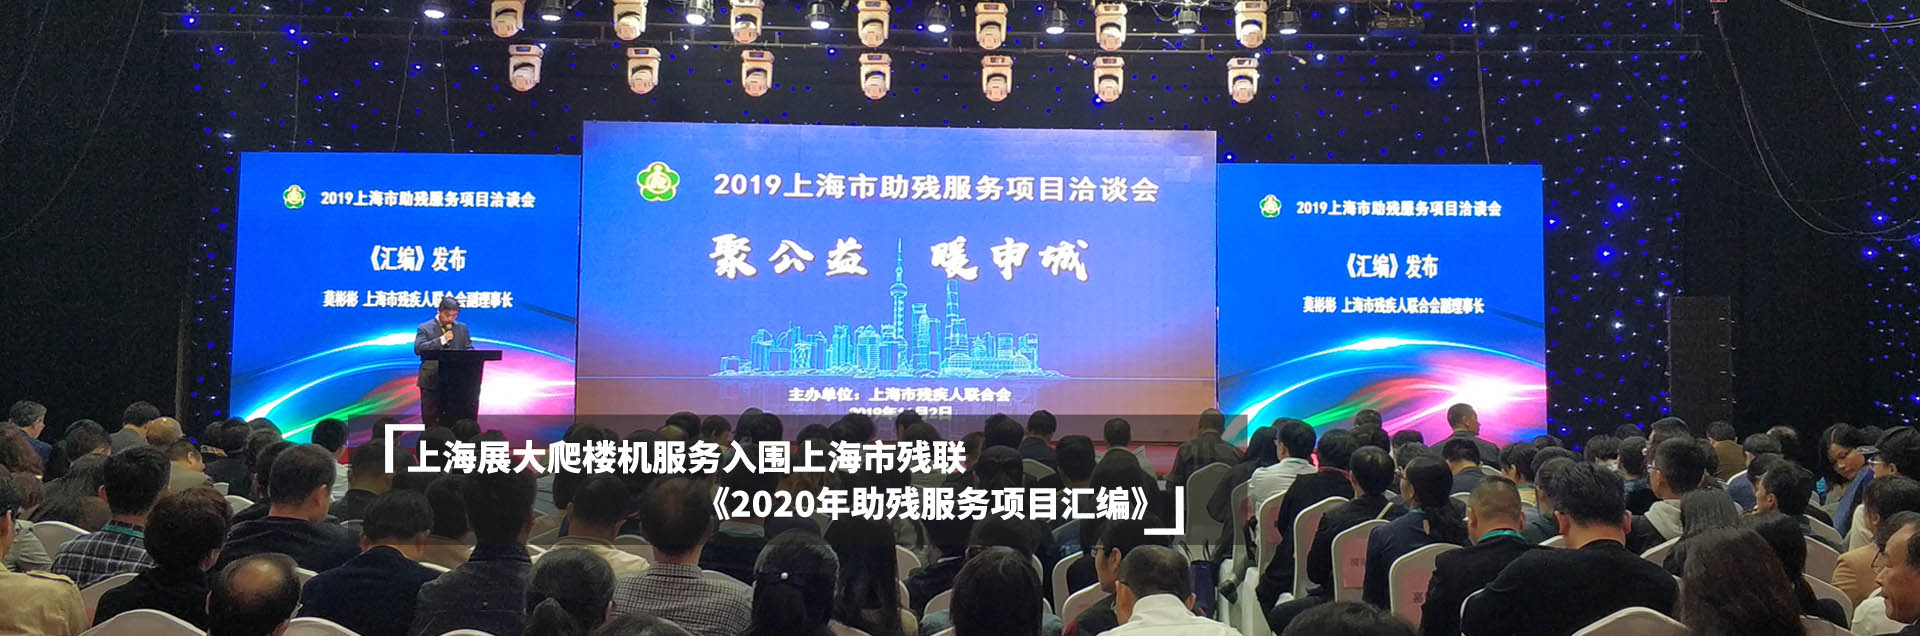 上海AG九游会爬楼机服务入围上海市残联《2020年助残服务项目汇编》